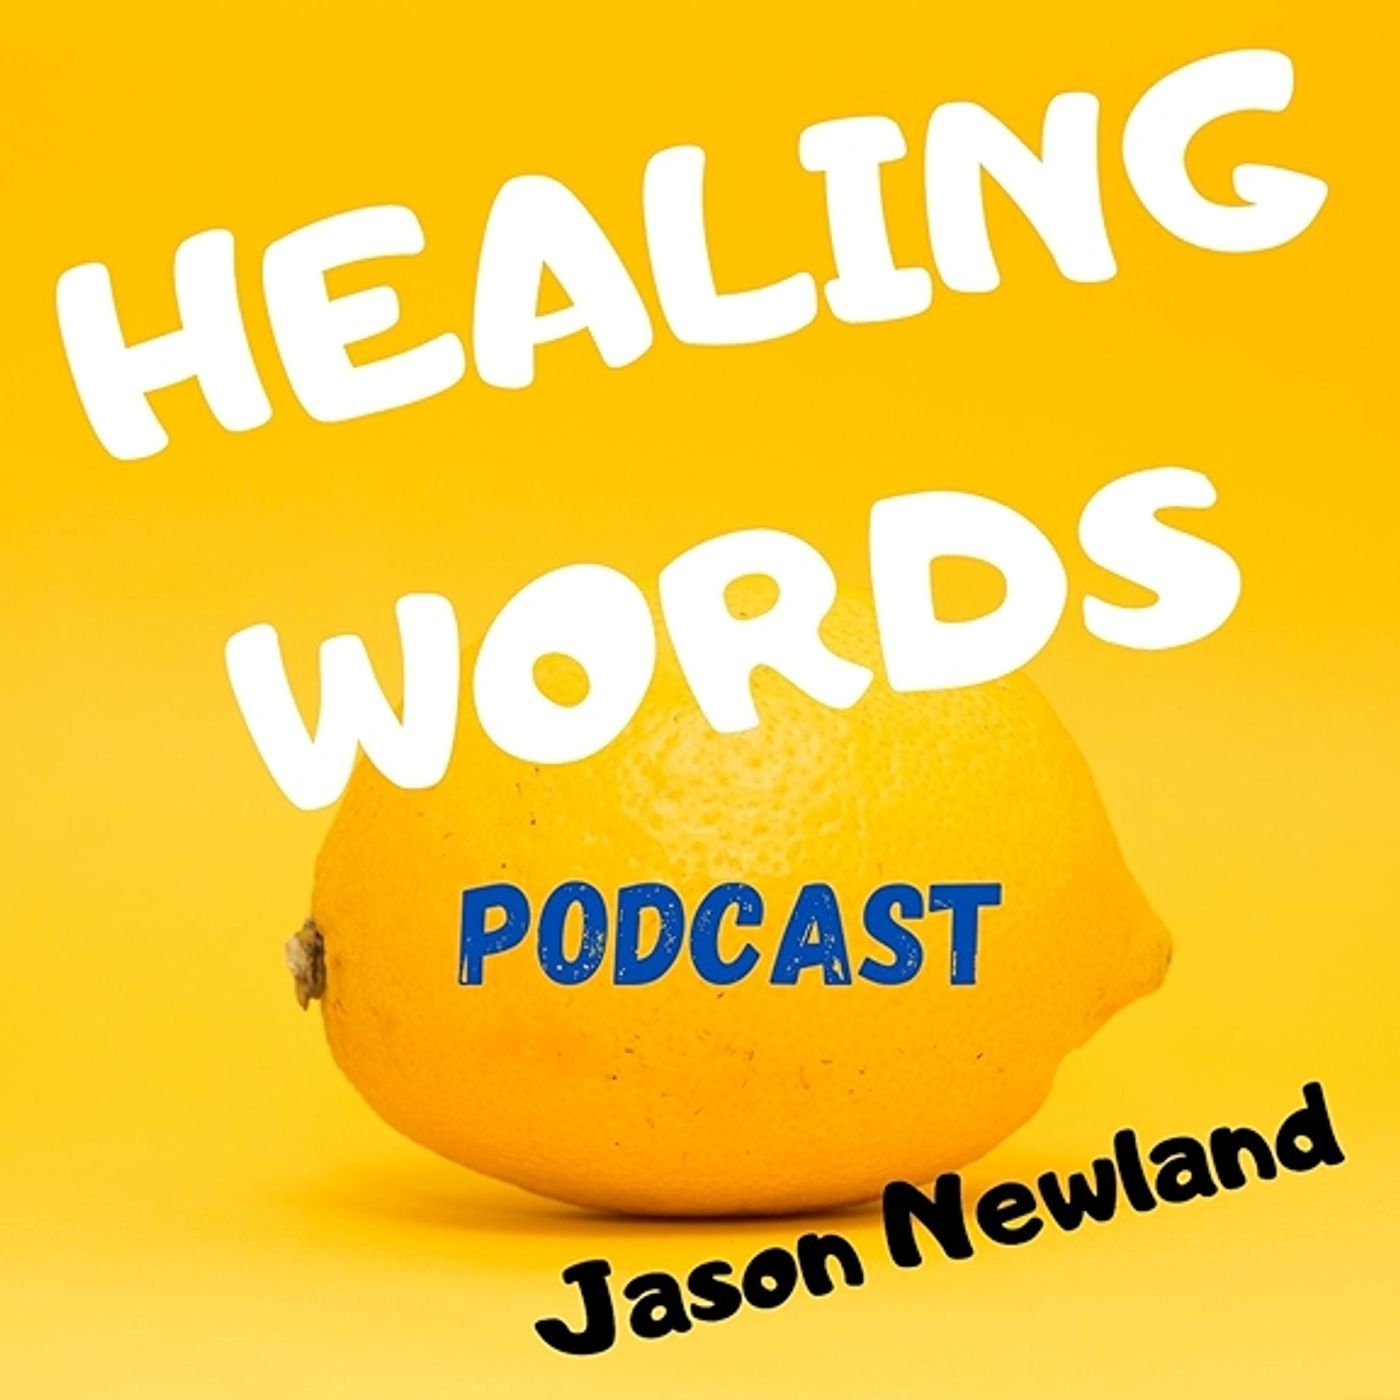 (2014) Healing Words - Jason Newland